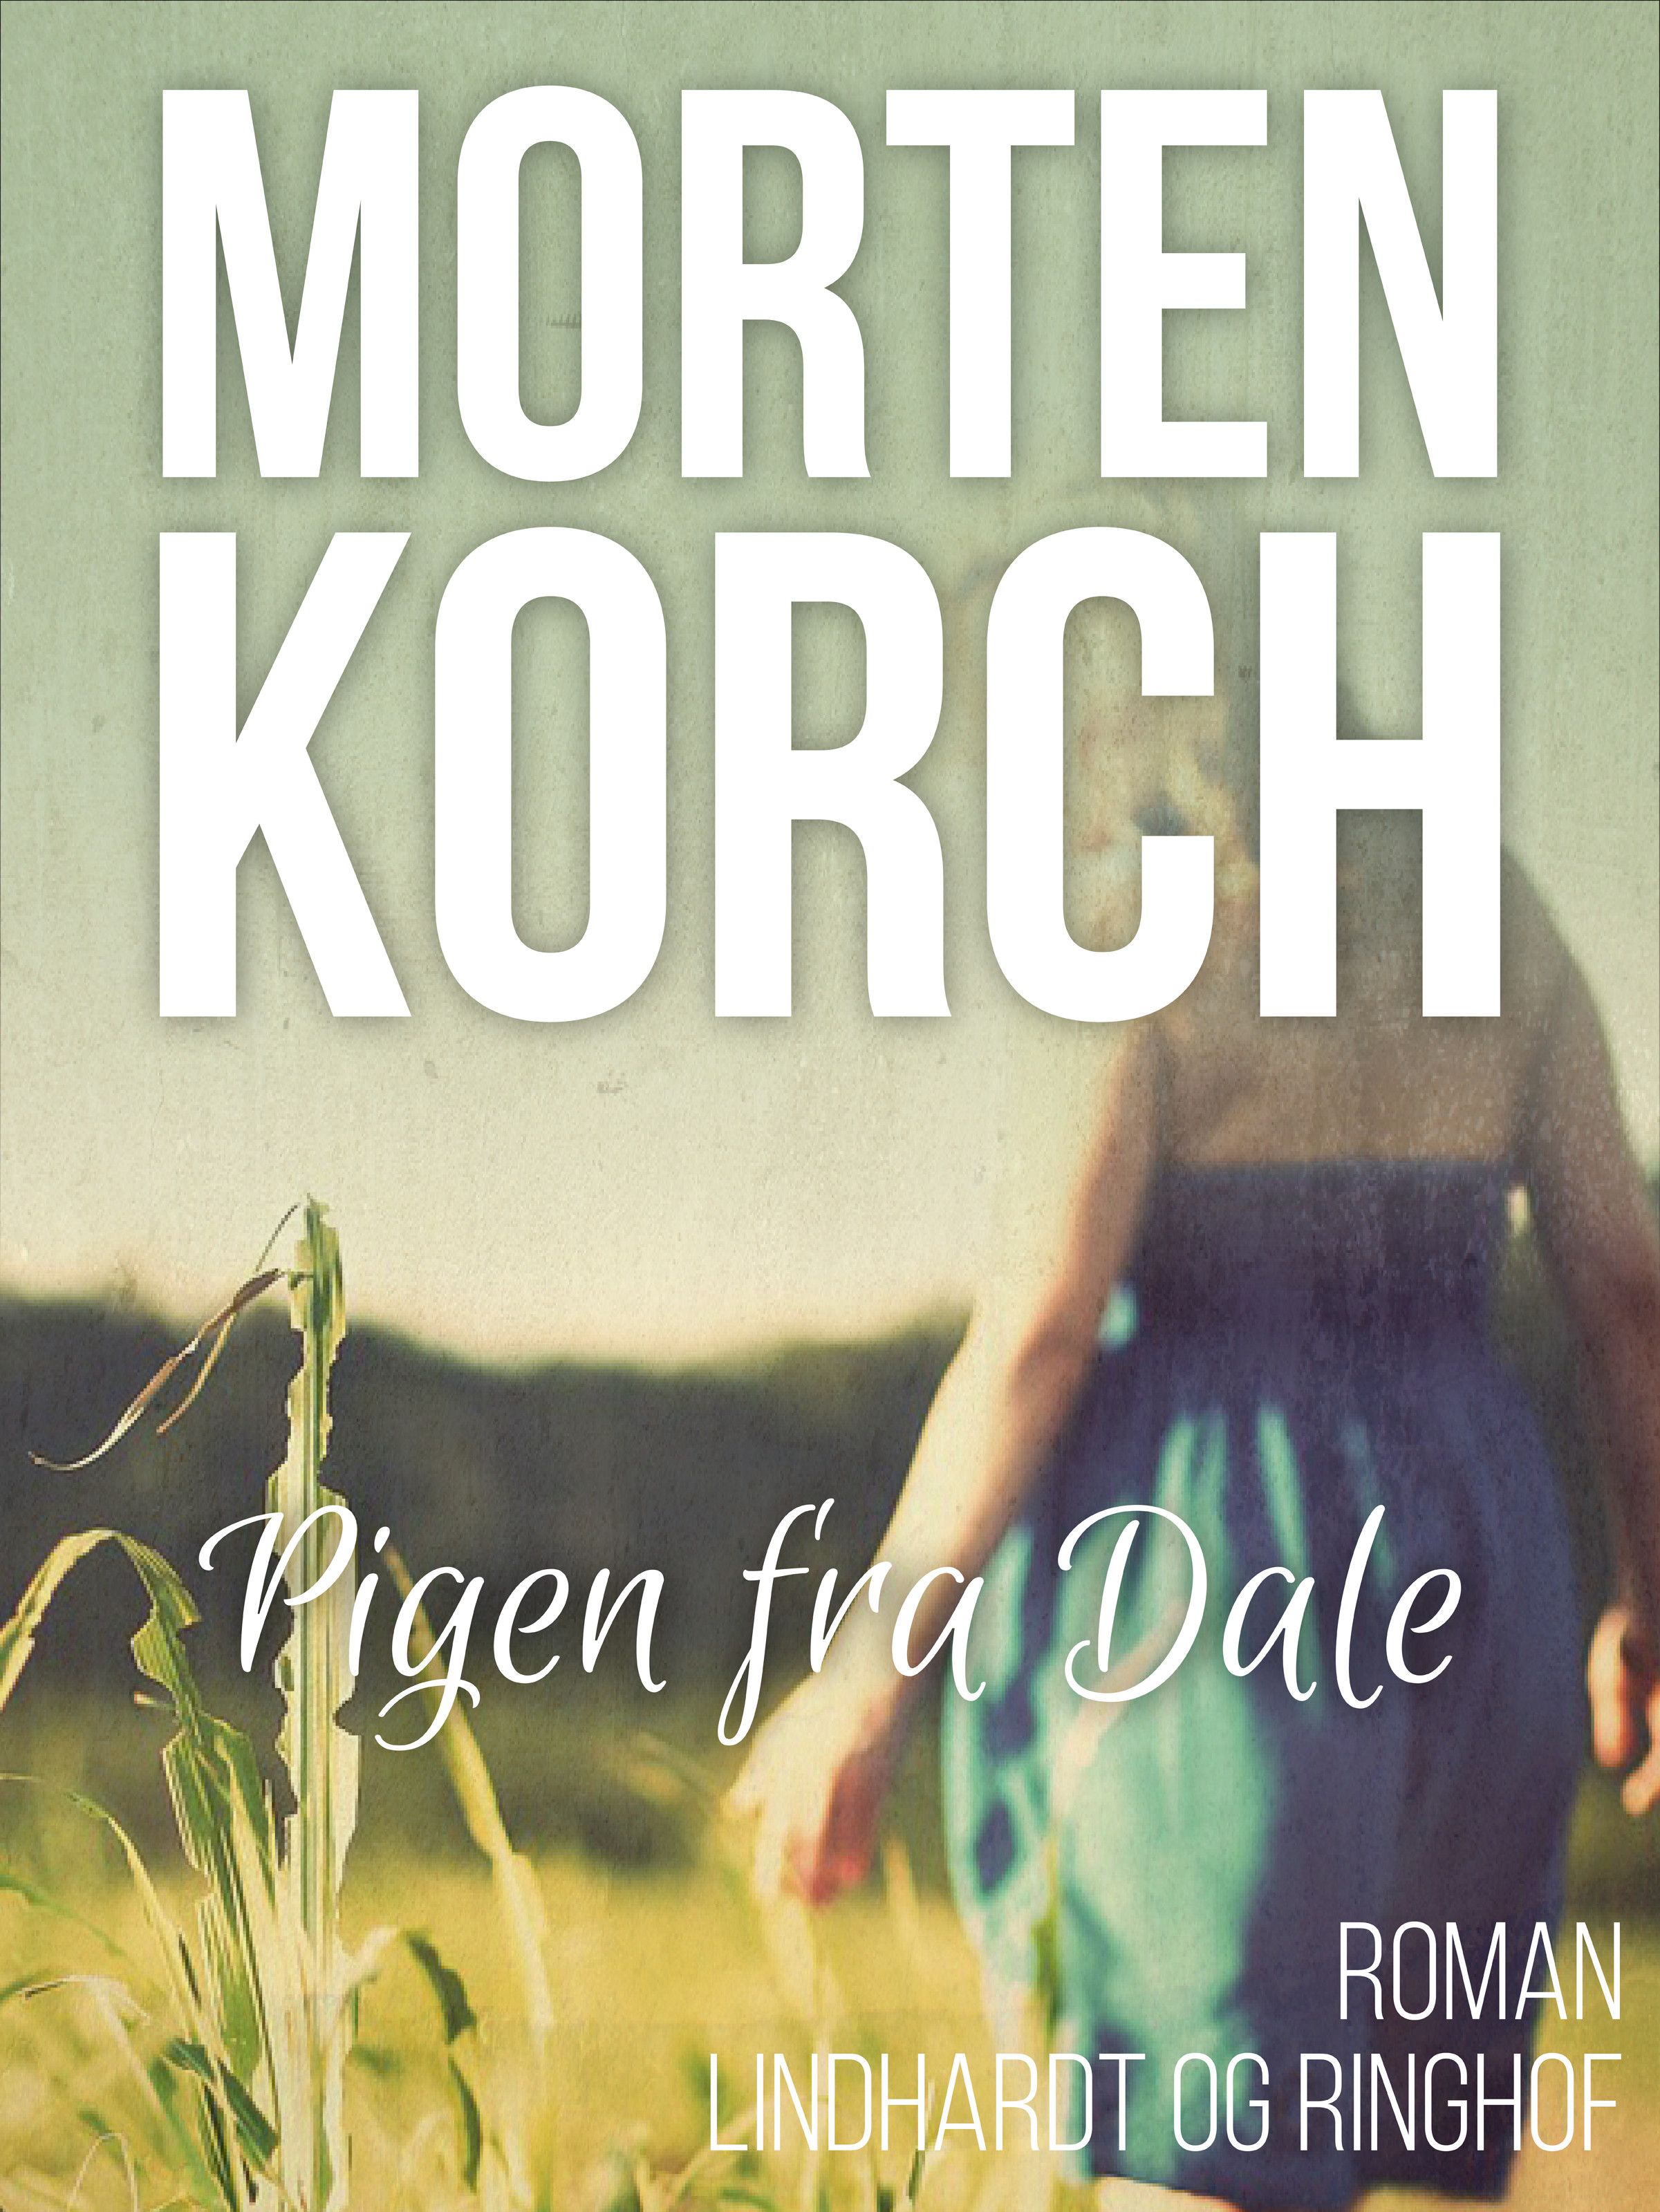 Pigen fra Dale, ljudbok av Morten Korch